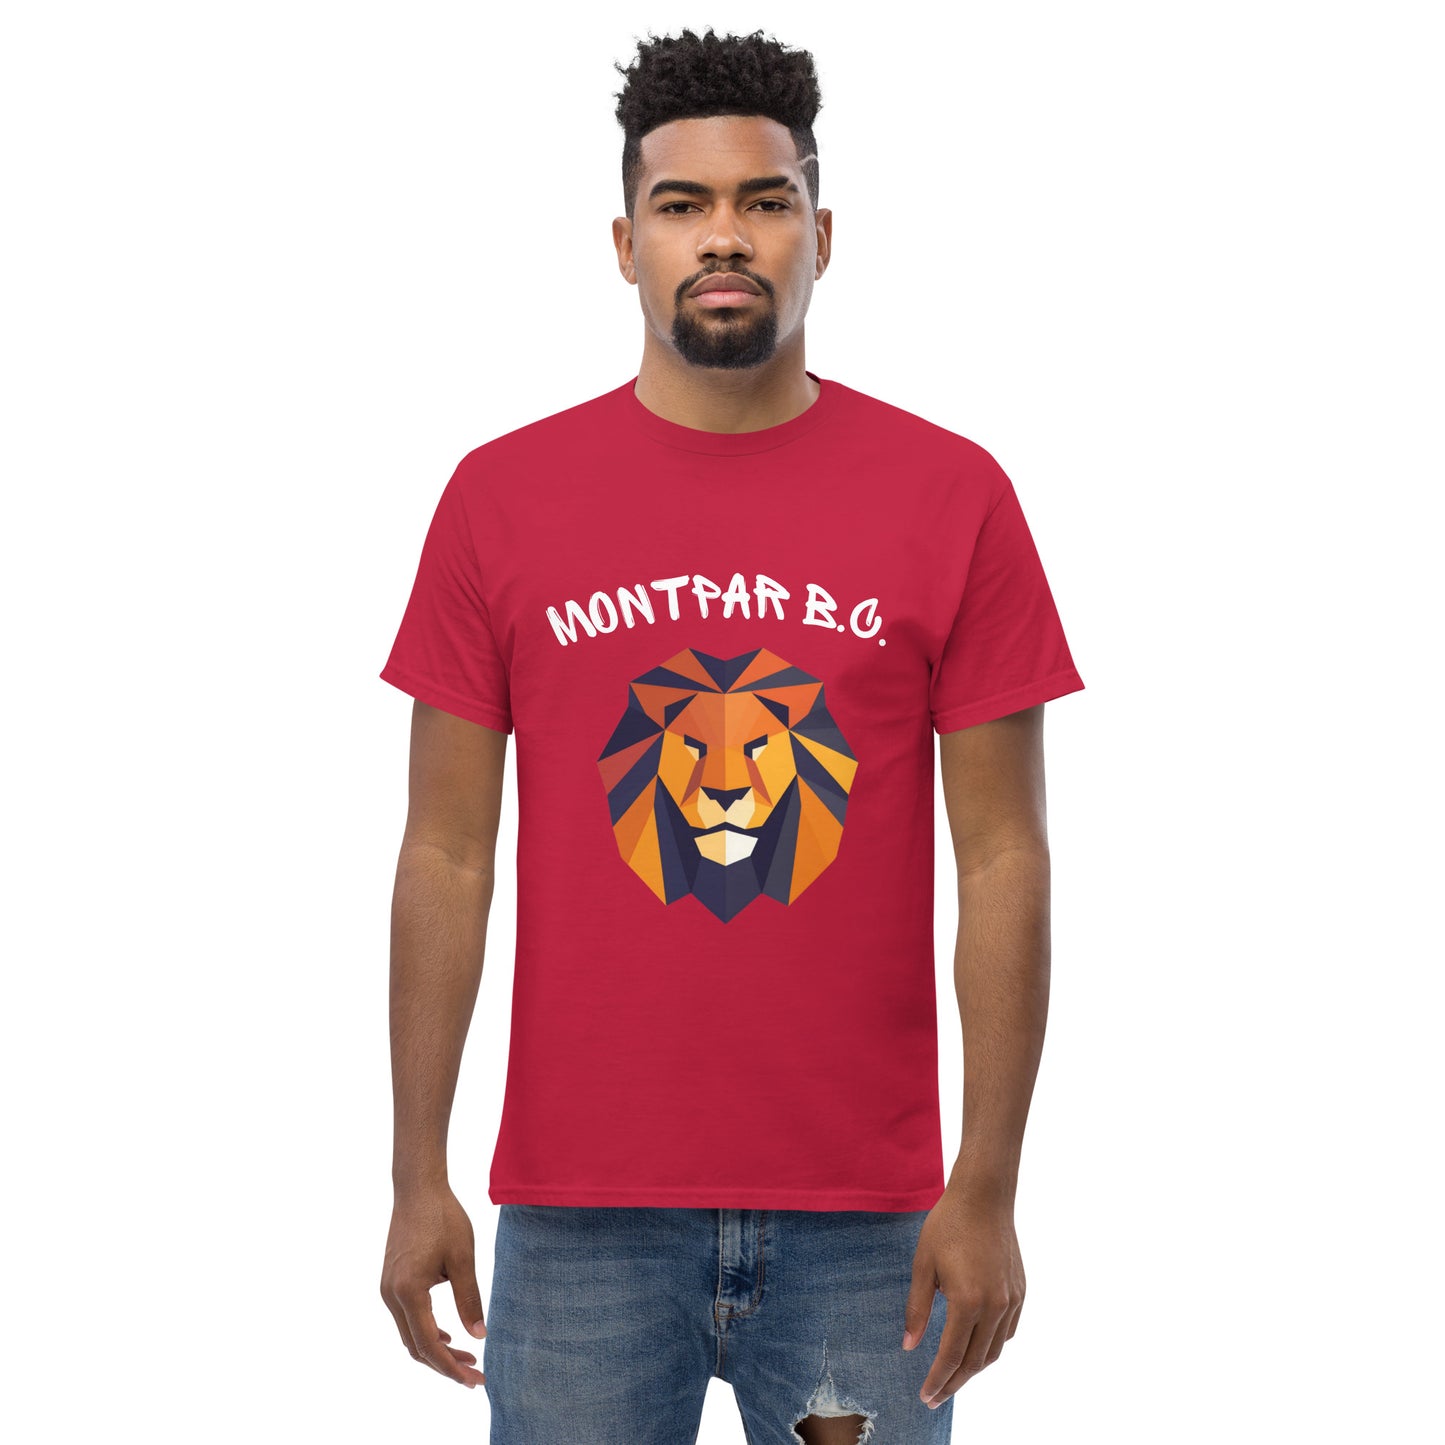 MONTPAR BC - T-shirt classique homme